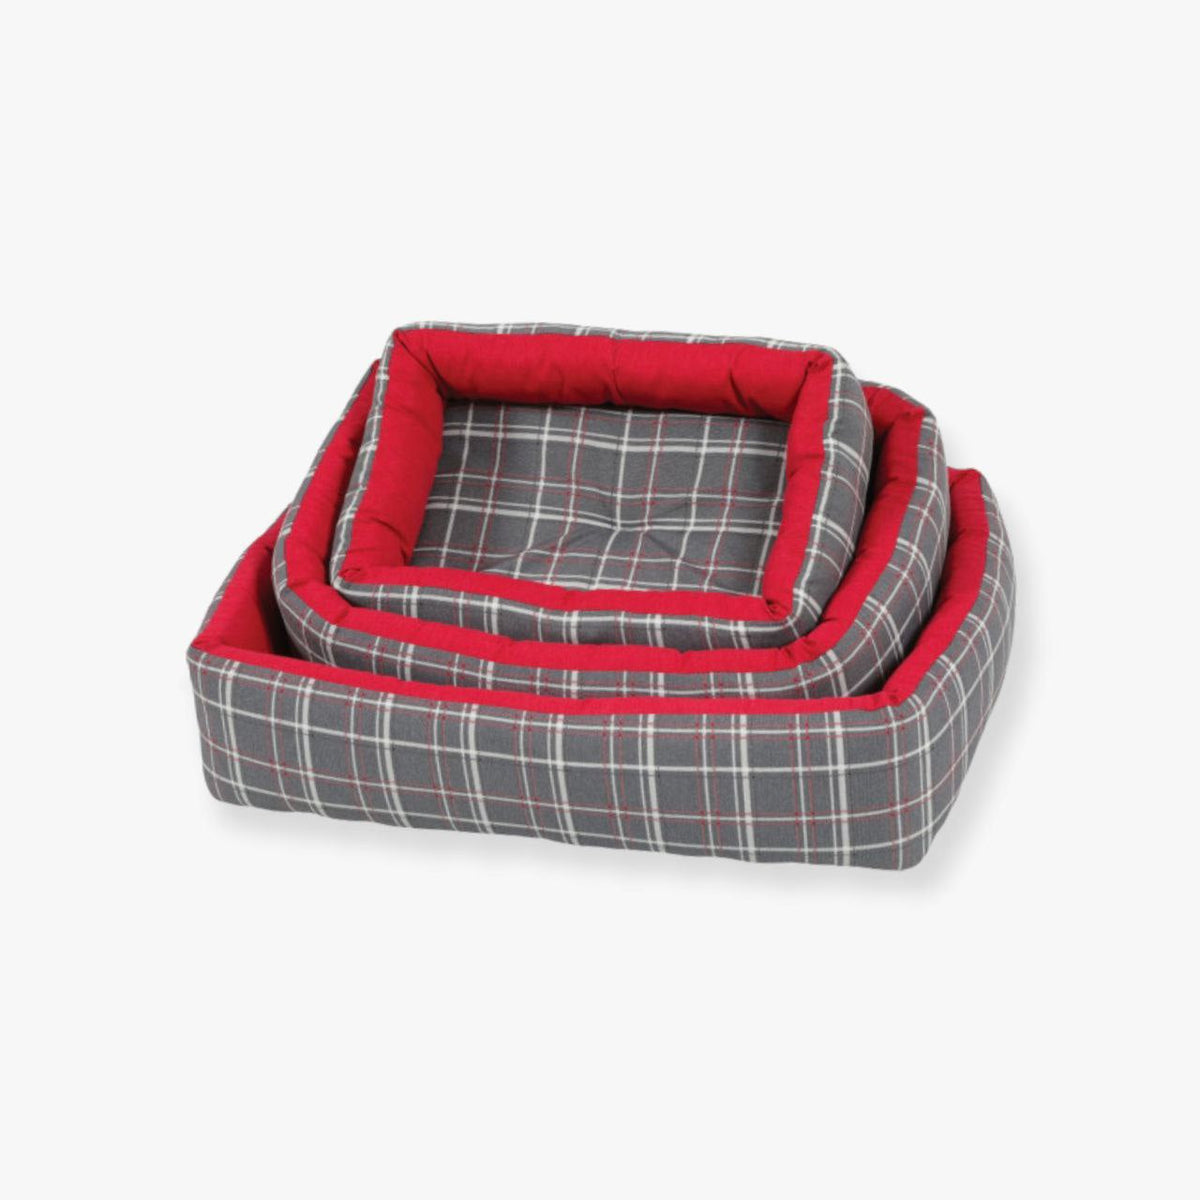 زولكس سرير مستطيل للقطط والكلاب حجم وسط  لون احمر ورمادي 53سم - PetPark | بيت بارك